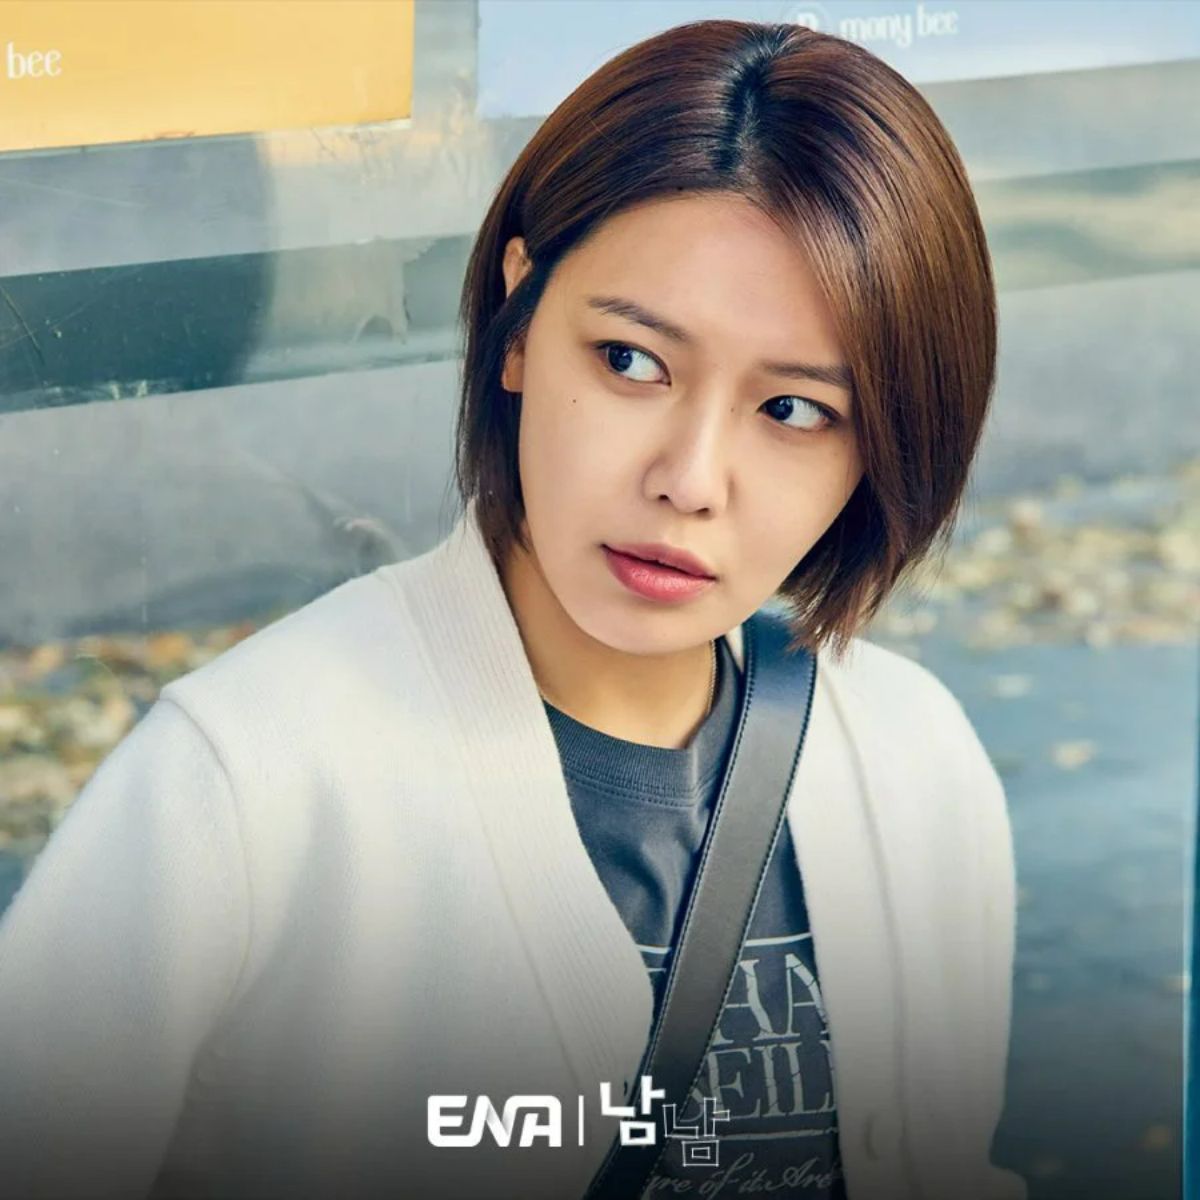 Vào vai một nữ cảnh sát lạnh lùng, Sooyoung xuất hiện với giao diện siêu đơn giản, gương mặt gần như để mộc trong vài khoảnh khắc